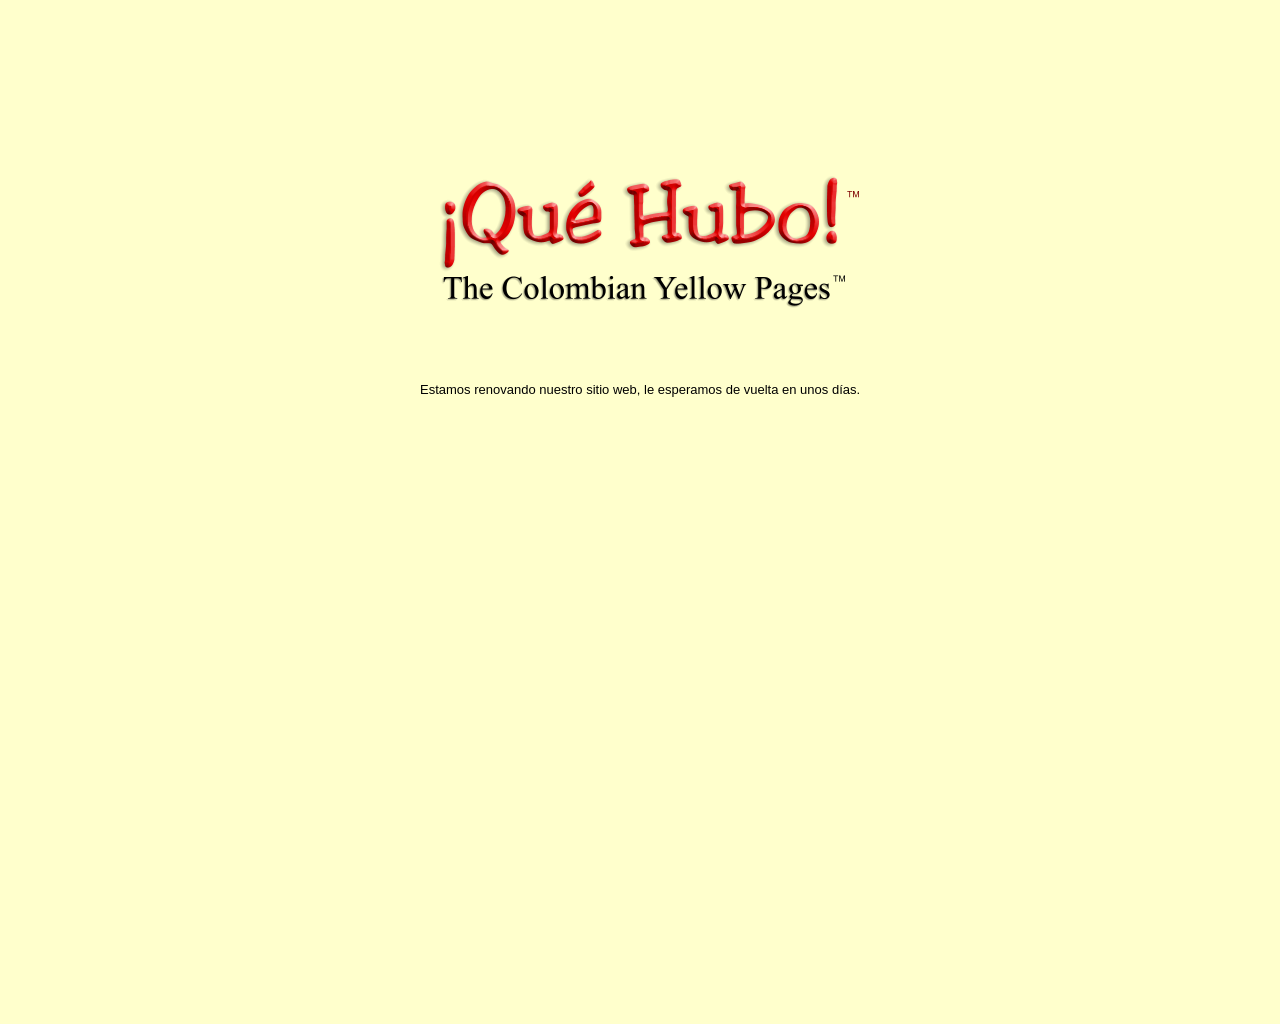 quehubo.com